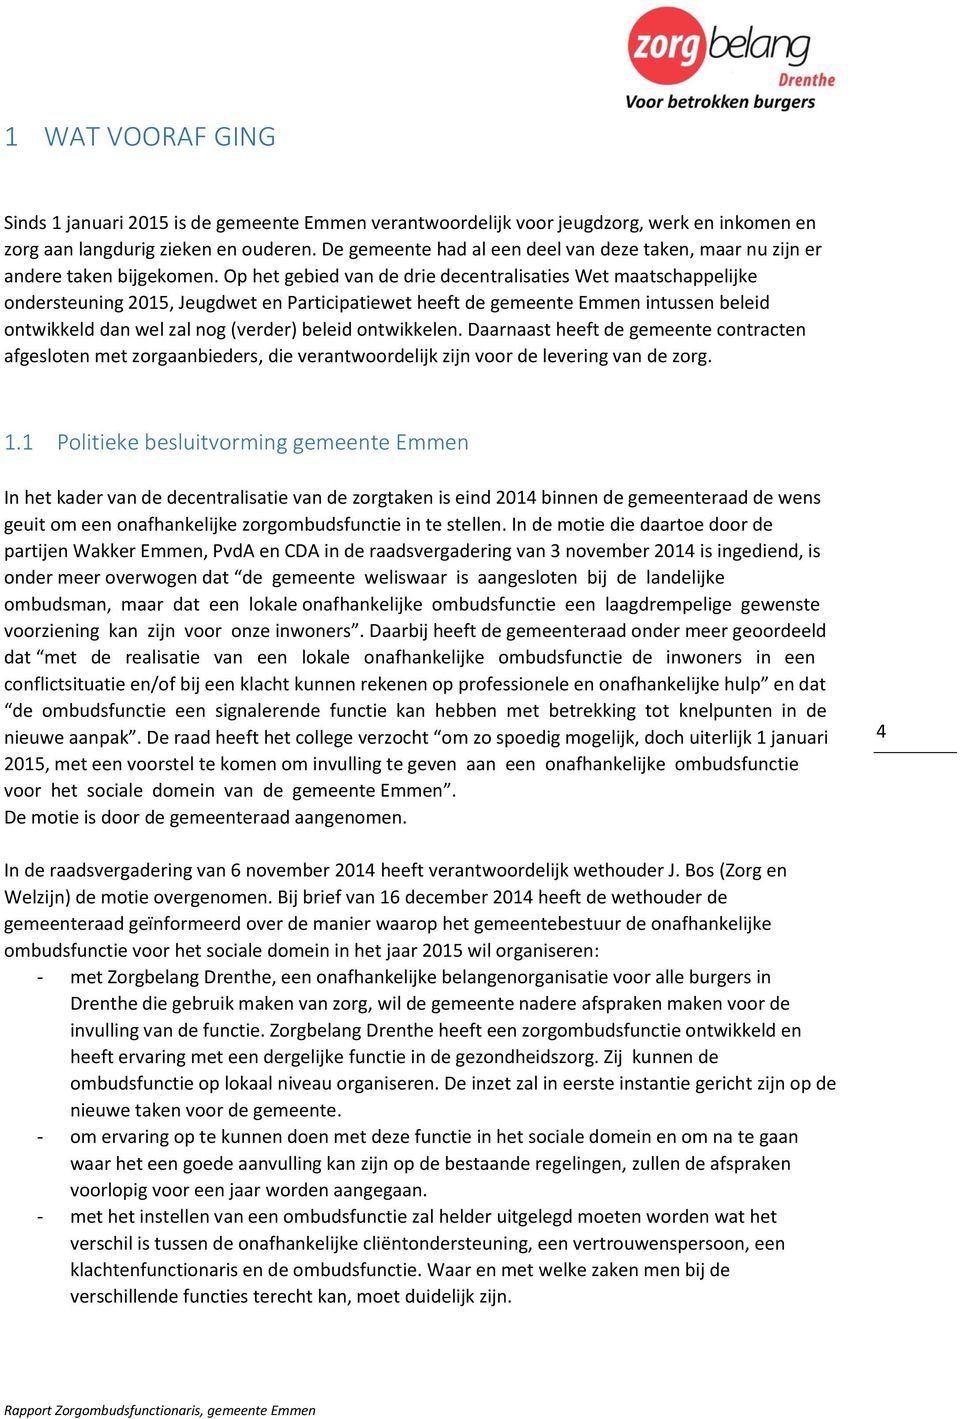 Op het gebied van de drie decentralisaties Wet maatschappelijke ondersteuning 2015, Jeugdwet en Participatiewet heeft de gemeente Emmen intussen beleid ontwikkeld dan wel zal nog (verder) beleid